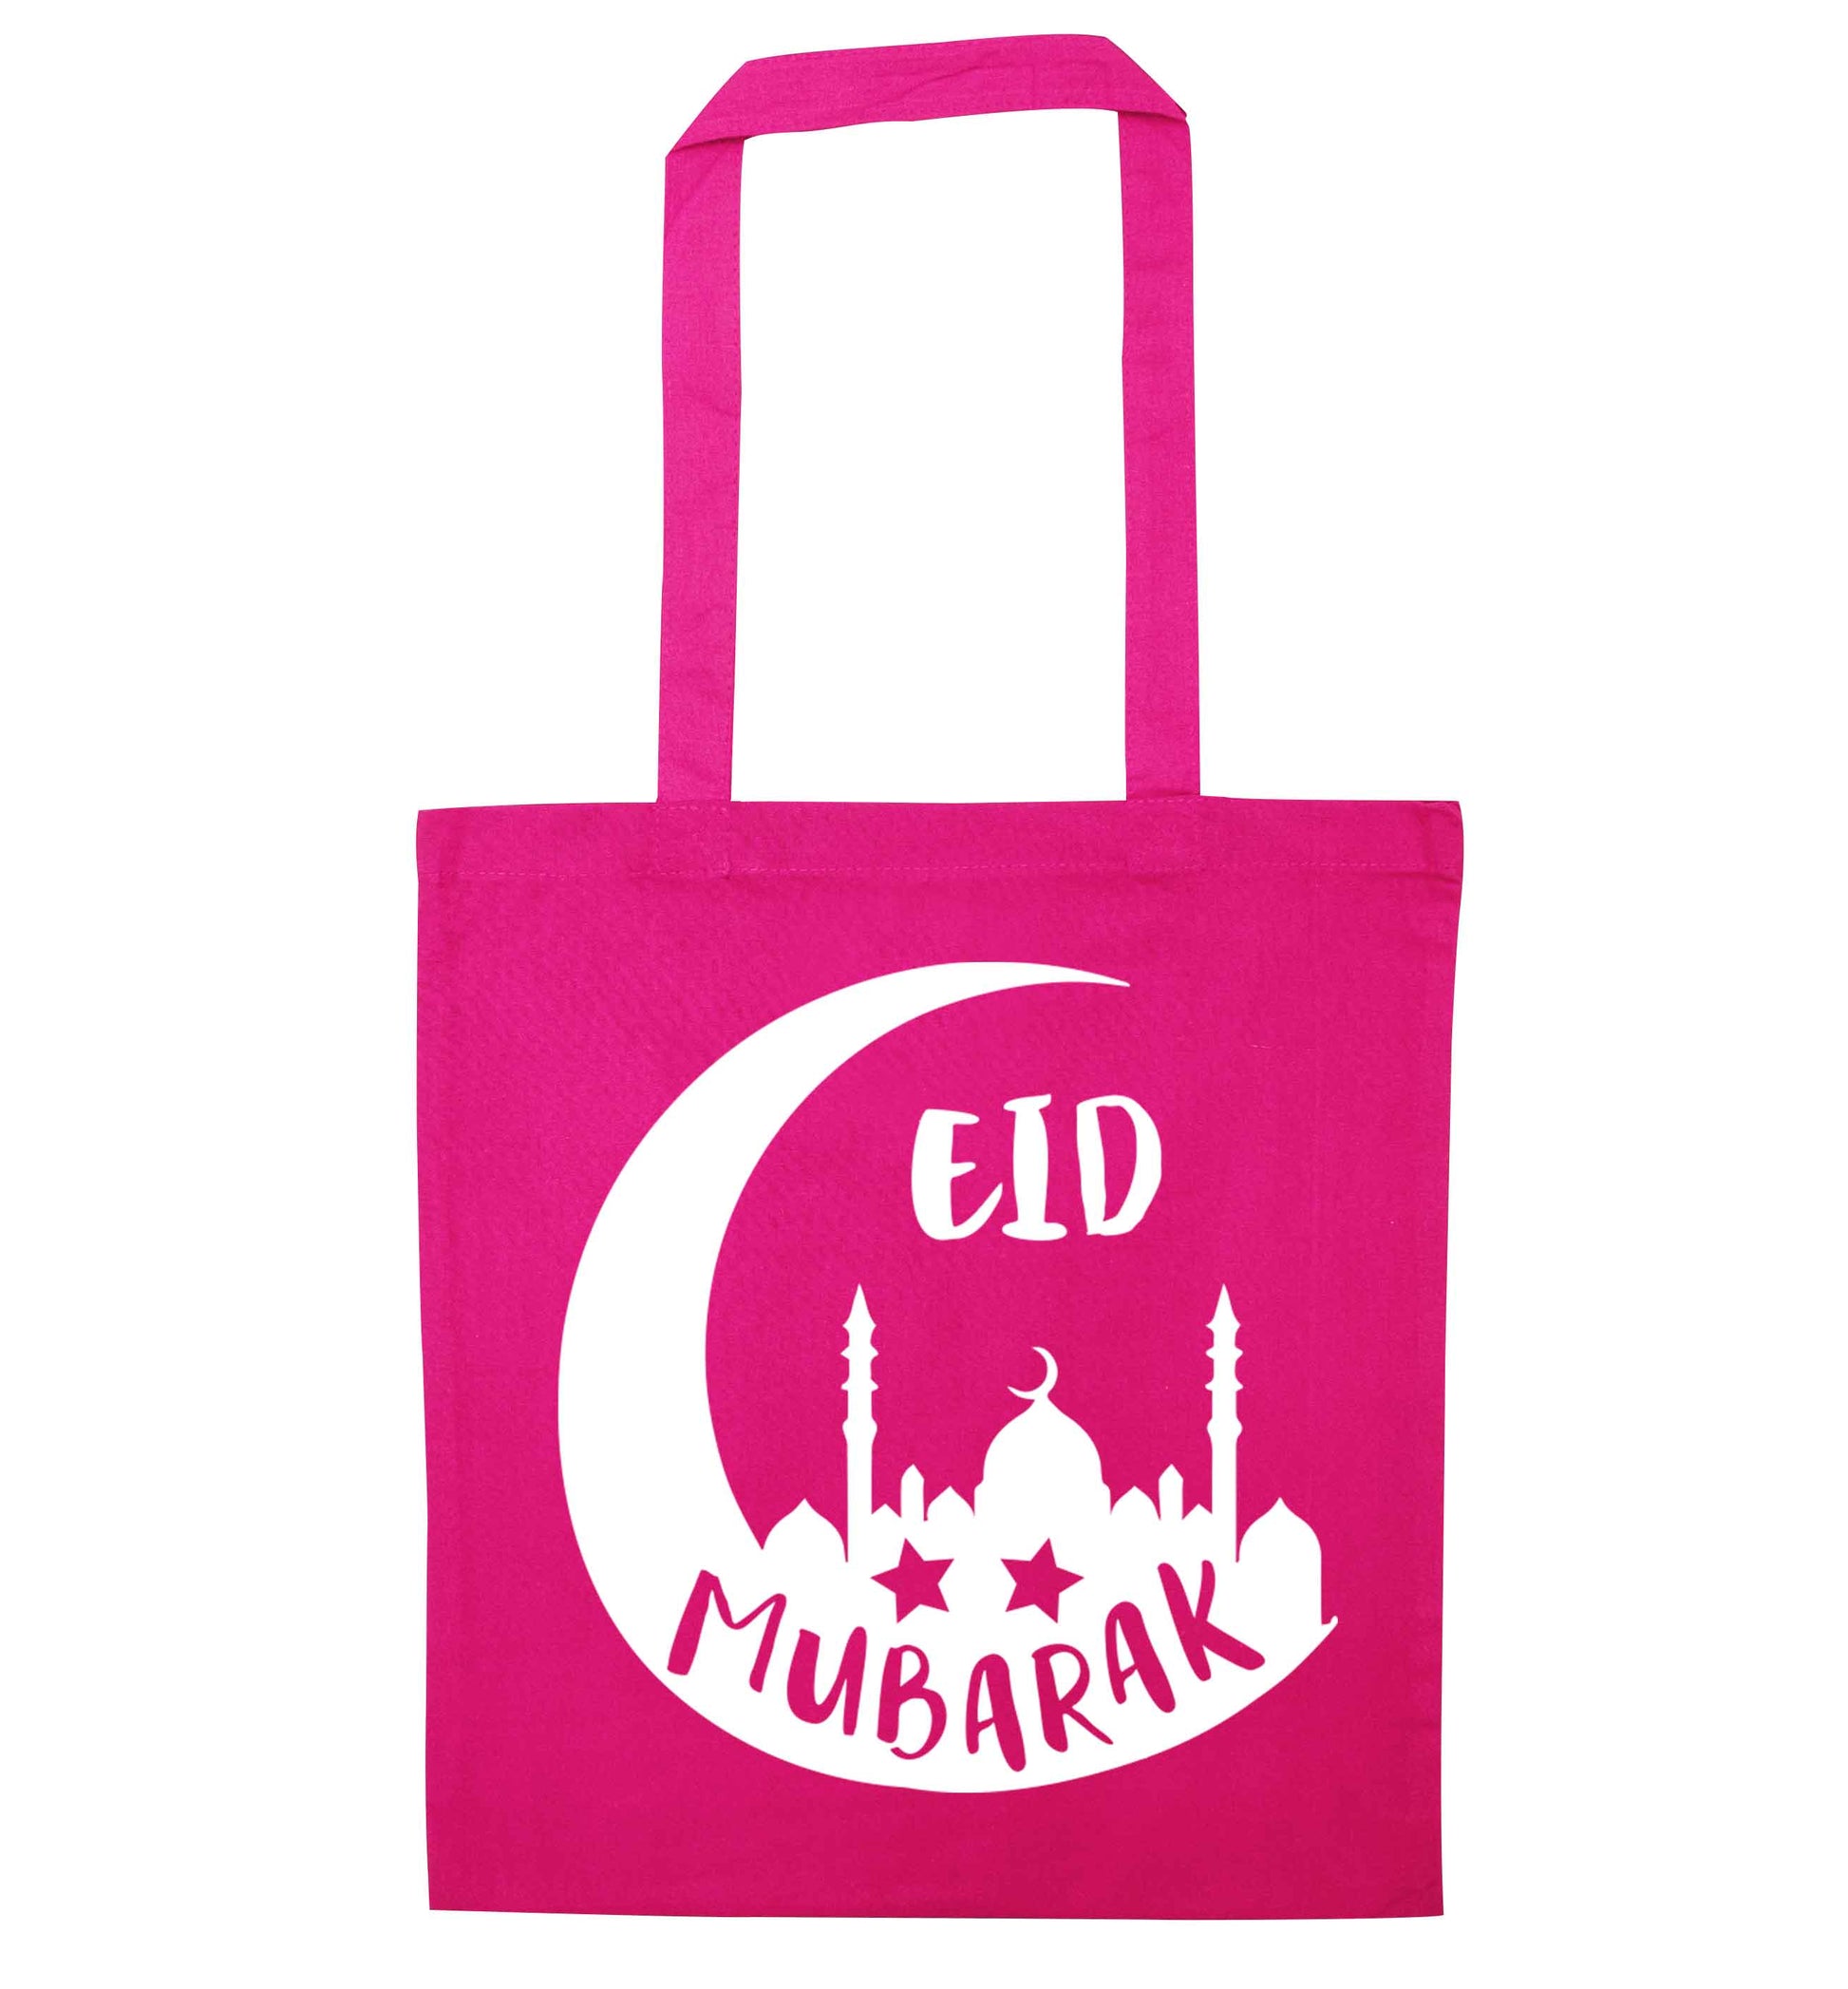 Eid mubarak pink tote bag